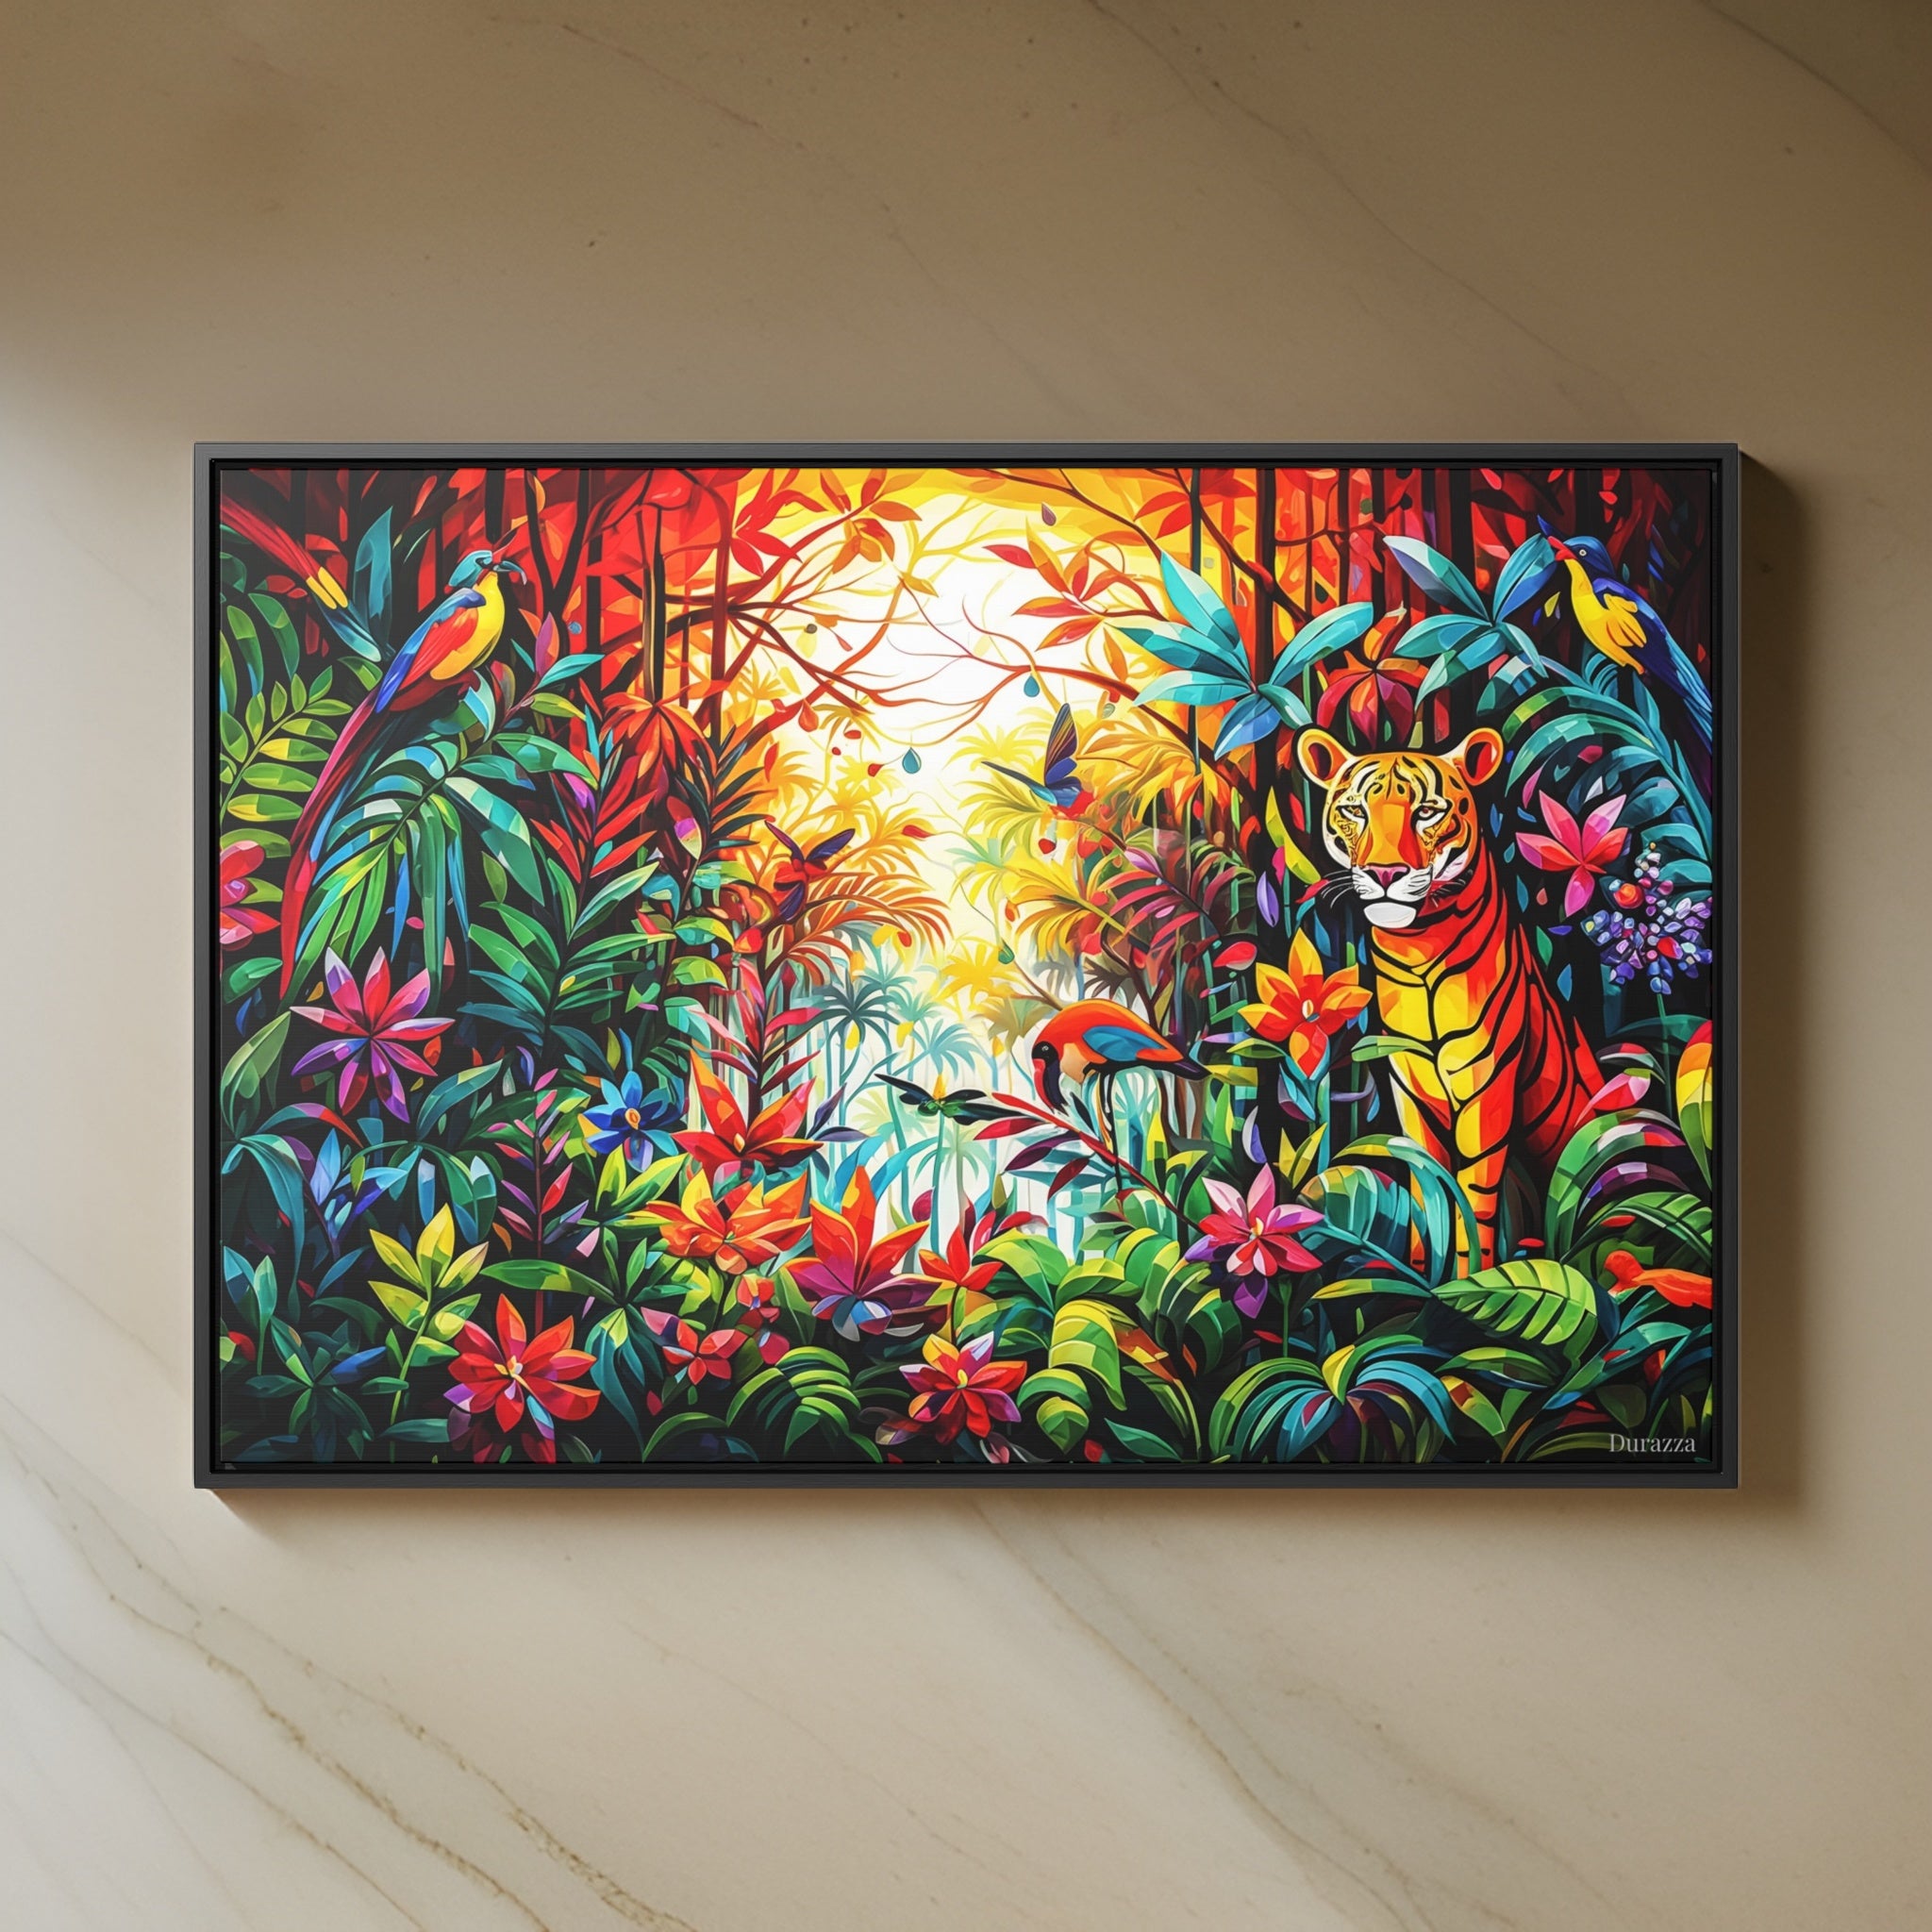 A Tiger's Tale Wall Art: Explore a Vibrant Jungle Paradise